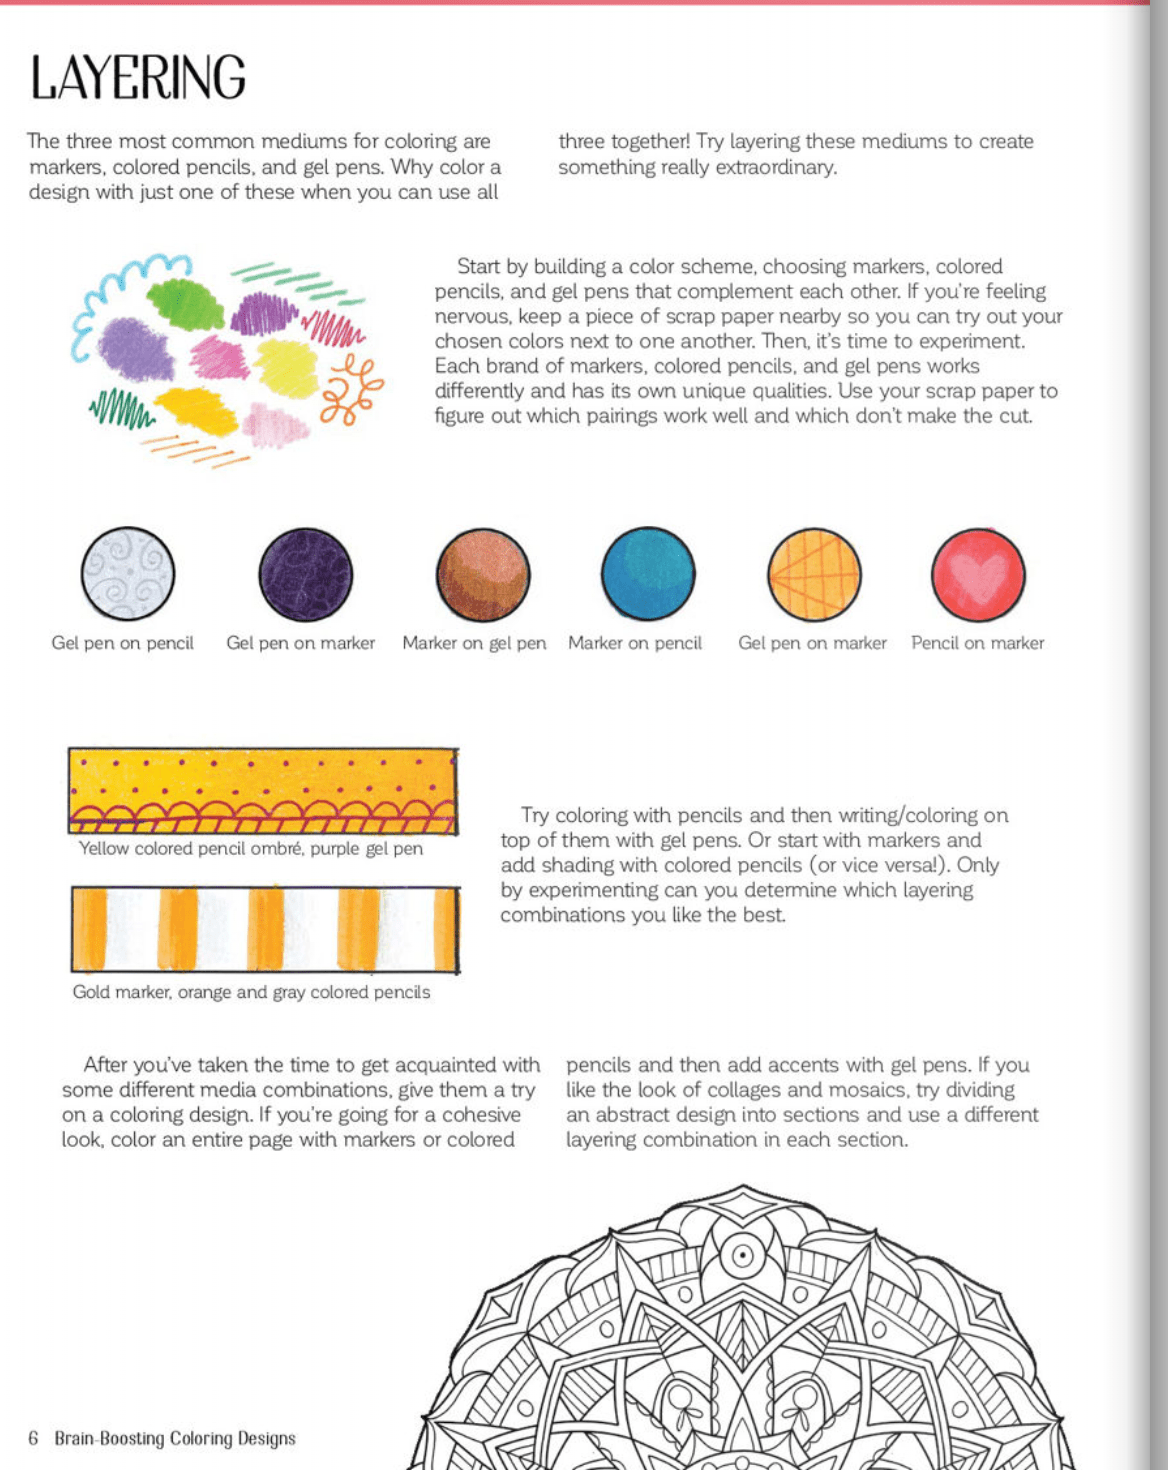 Coloring Book - Brain-Boosting